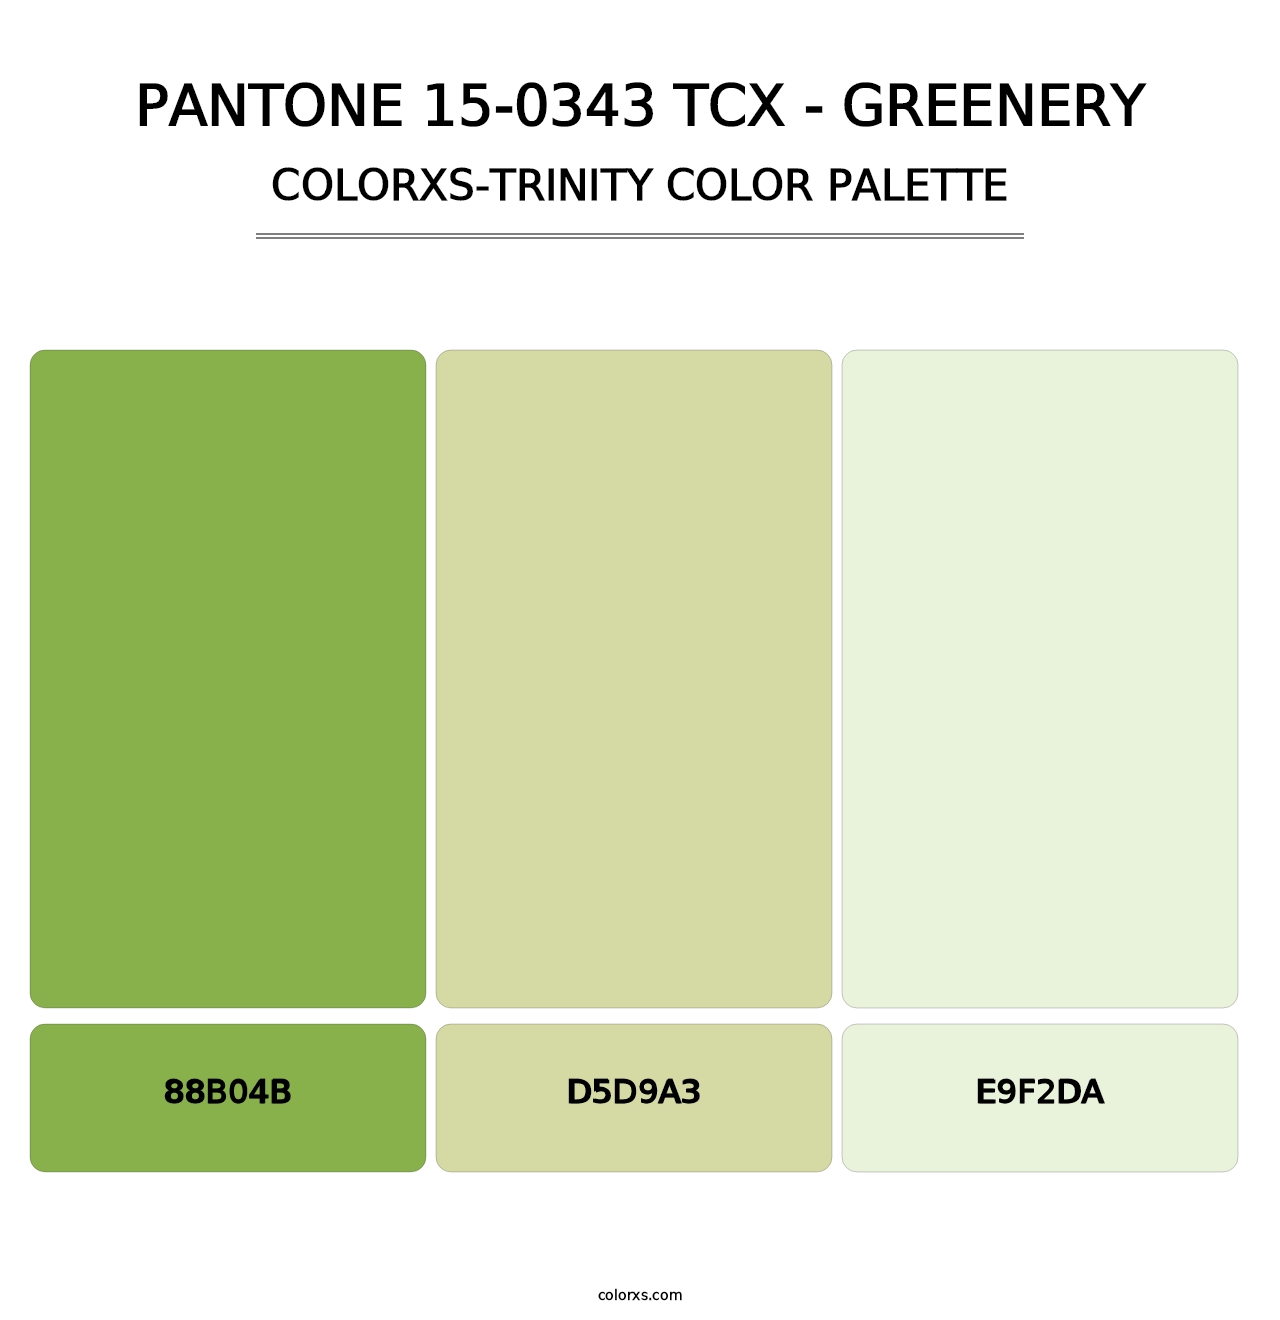 PANTONE 15-0343 TCX - Greenery - Colorxs Trinity Palette